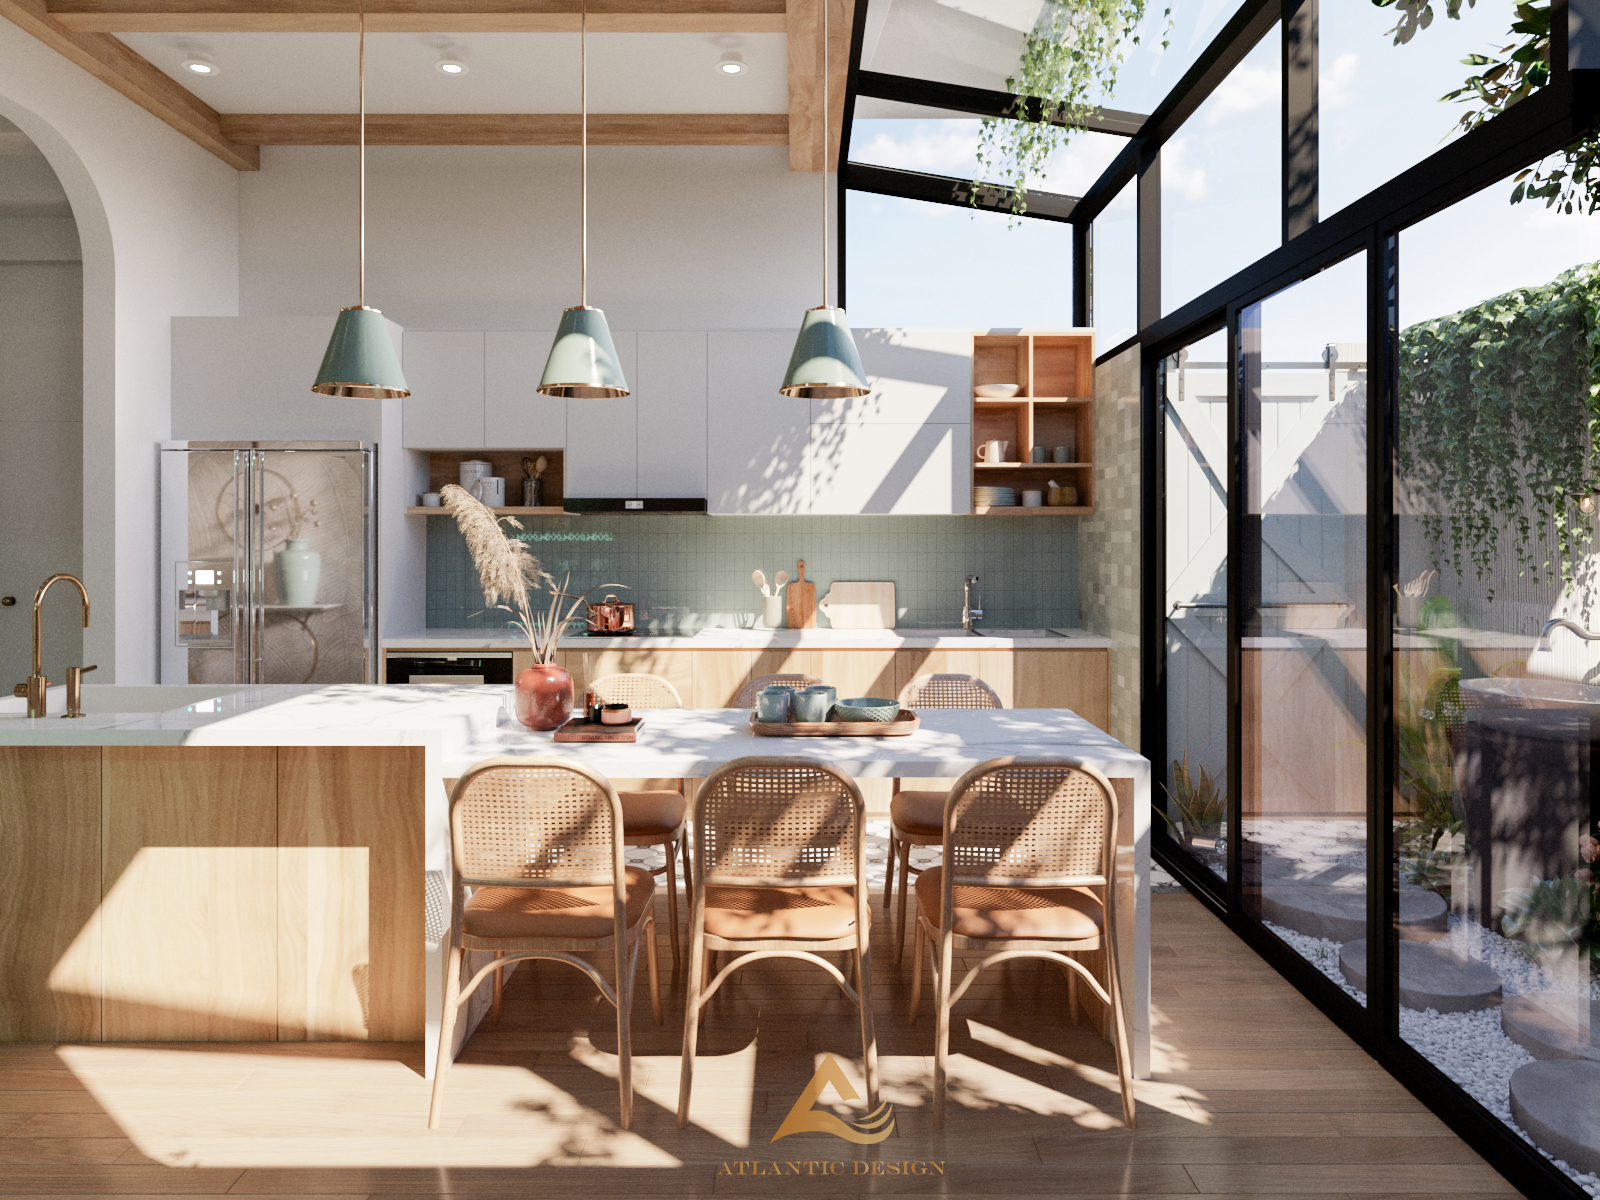 Hệ tủ bếp sử dụng gỗ công nghiệp cao cấp kết hợp trang trí bằng gạch mosaic xanh ngọc